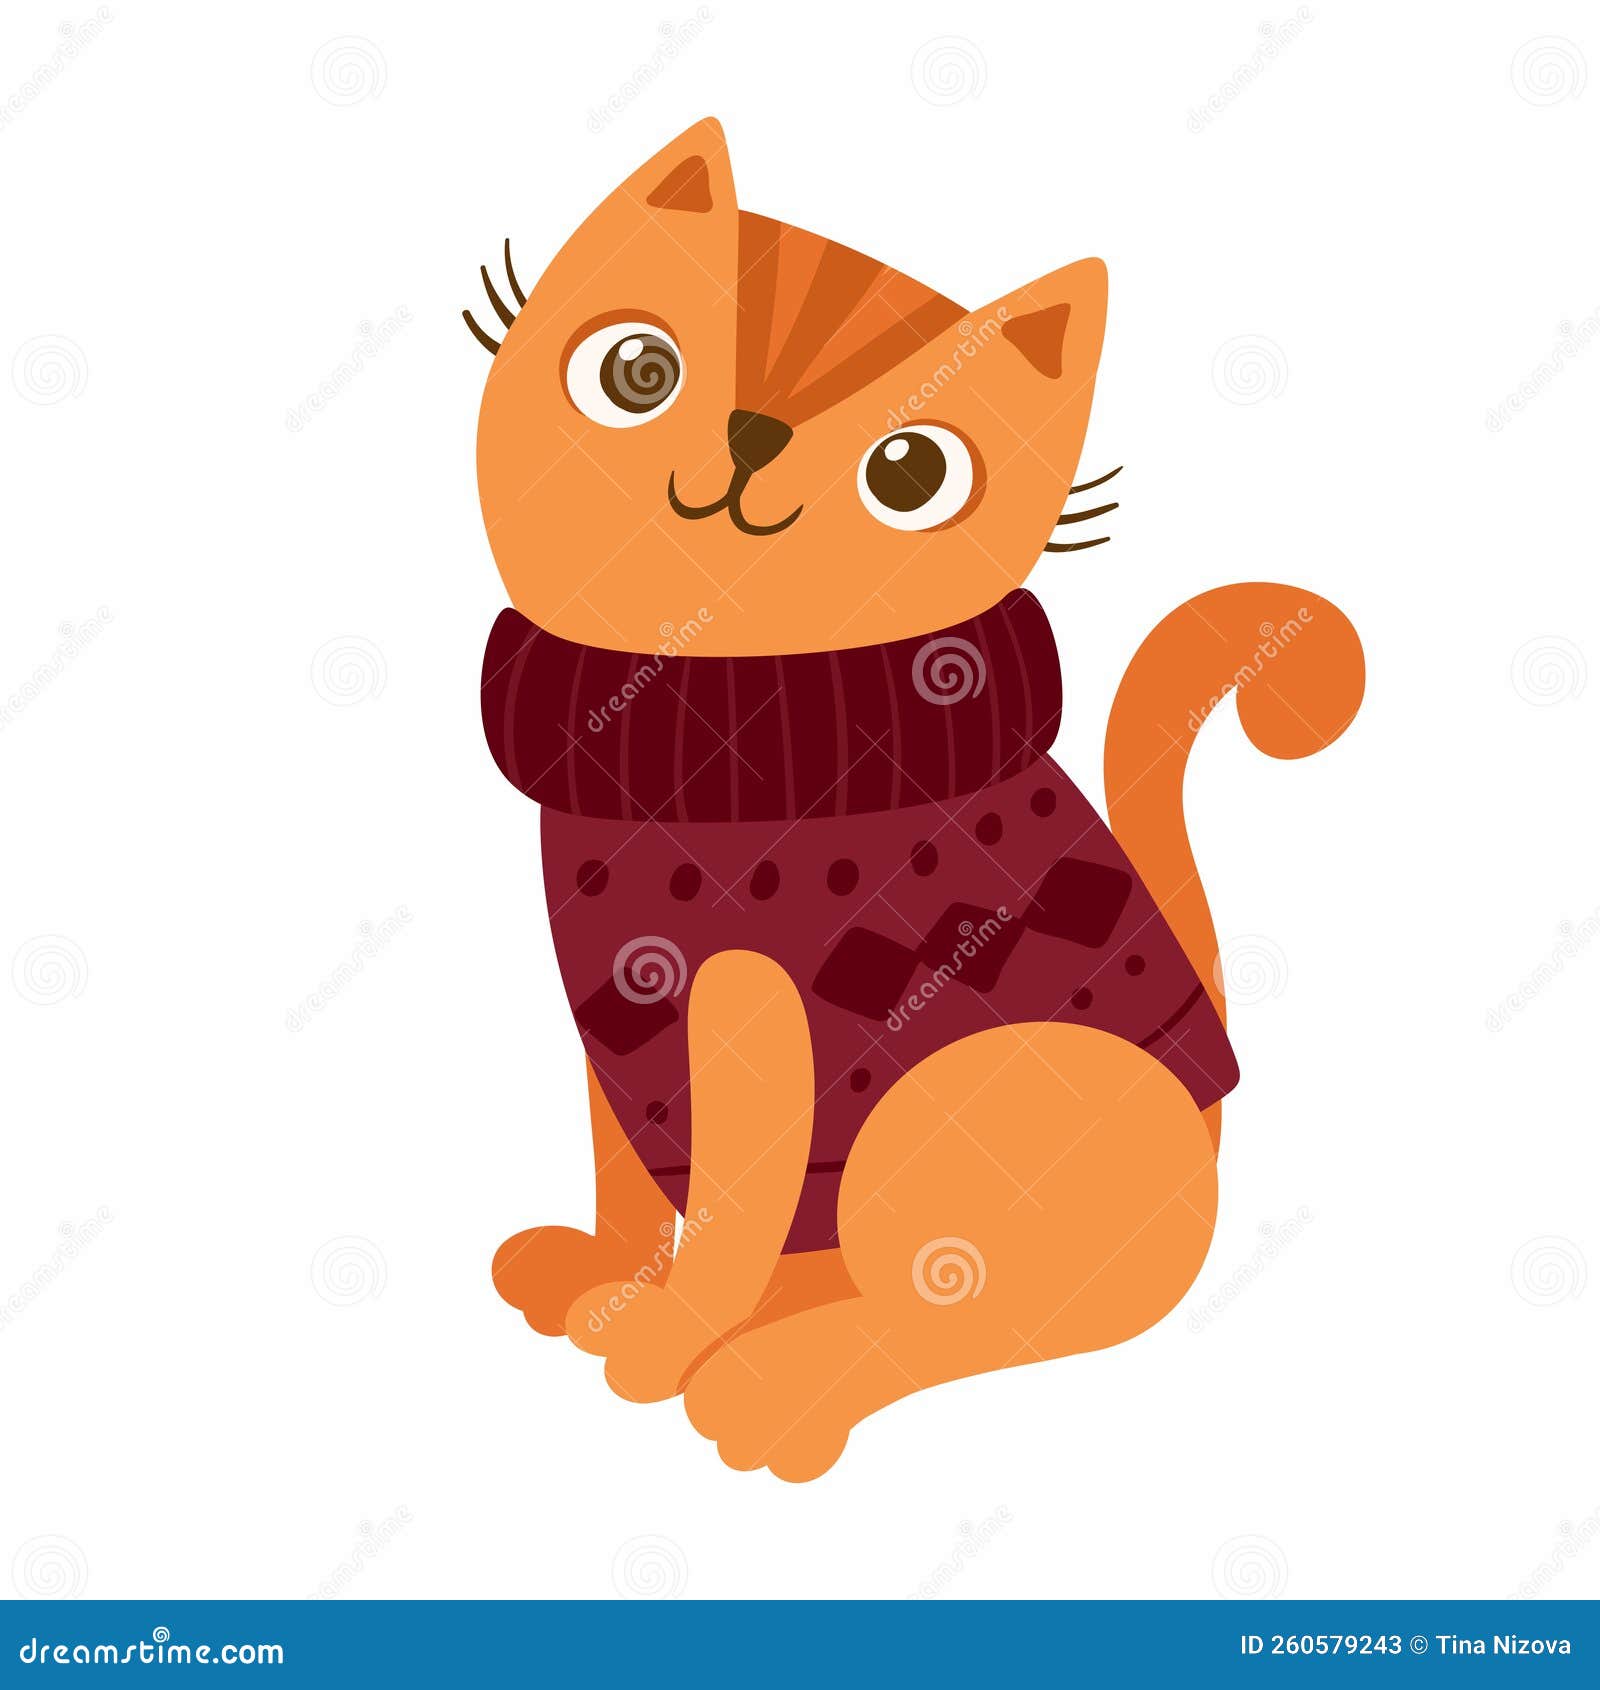 Otoño nuevo estilo falda de gato ropa para perro pequeña perro-ropa para  patas de otoño y ropa de invierno ropa para mascotas ropa de gato ropa para